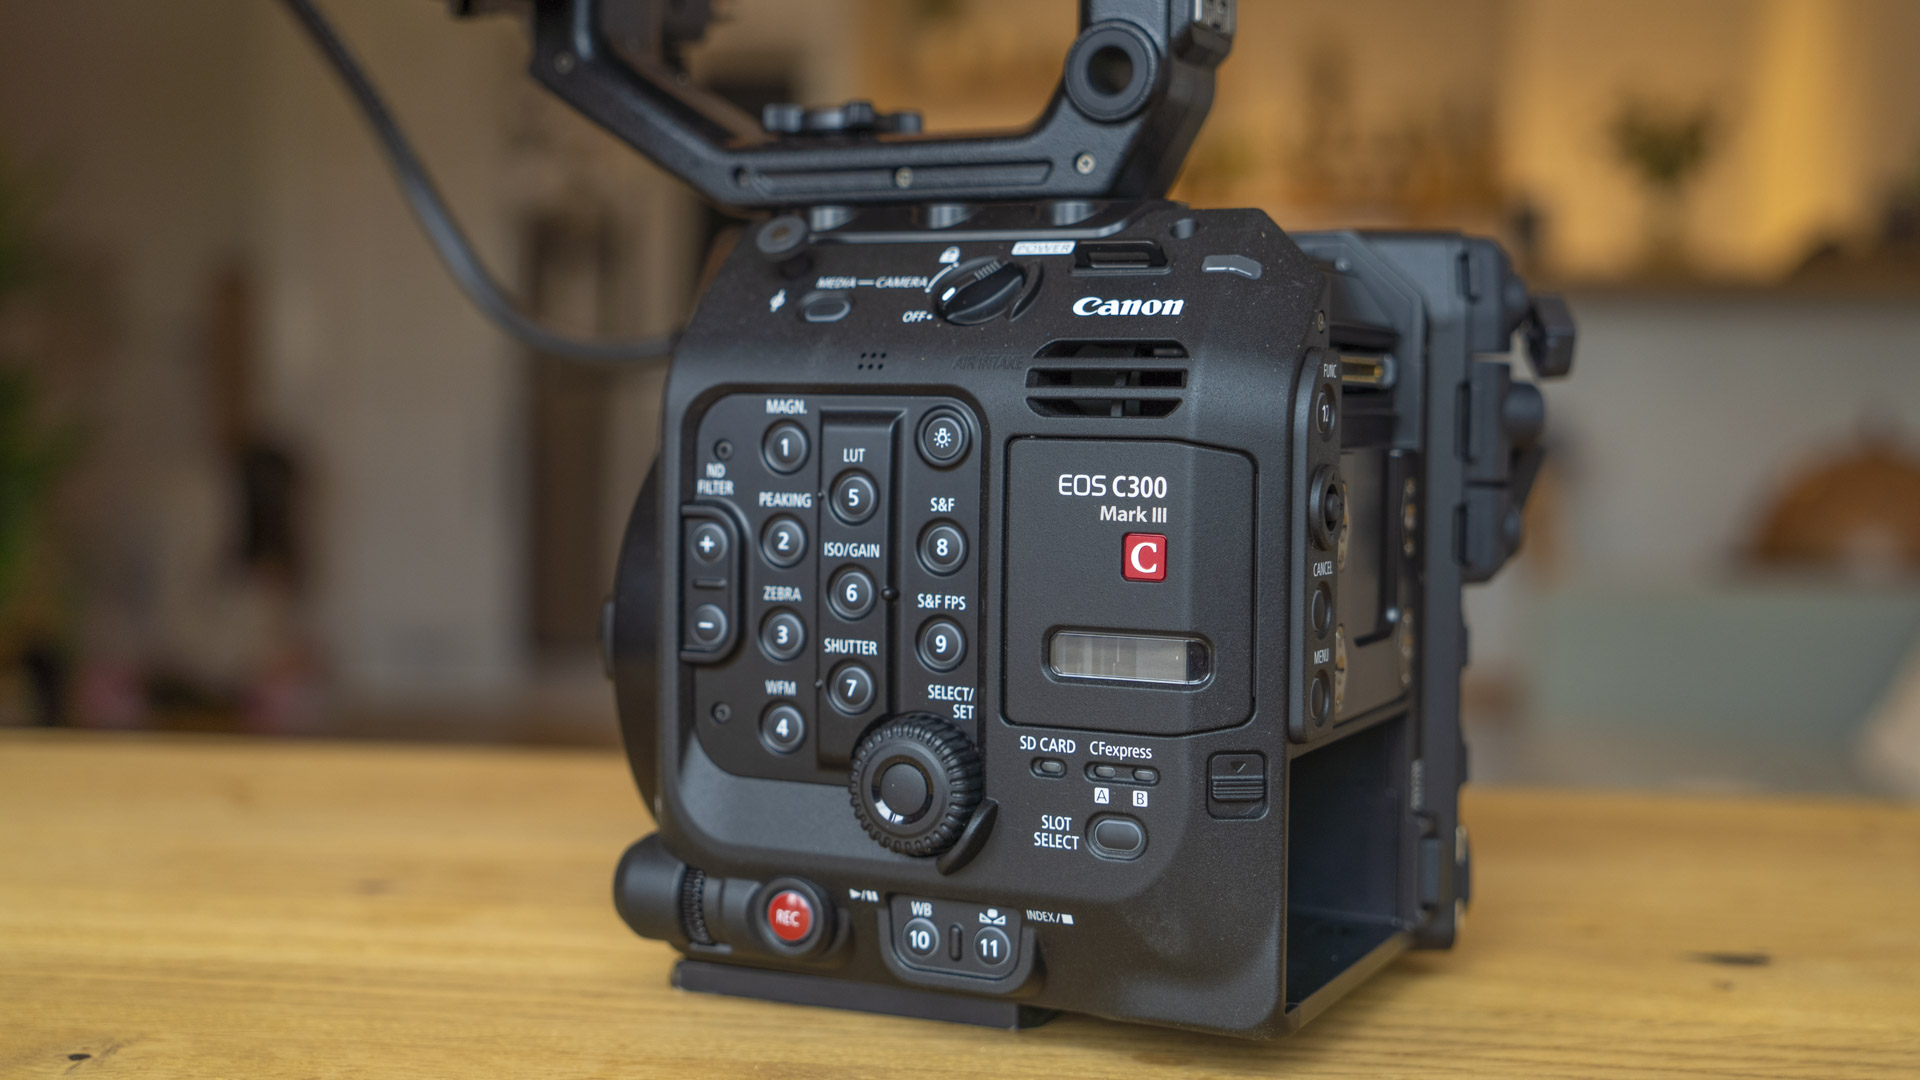 Canon ra mắt thiết bị mở rộng chức năng cho các máy quay chuyên nghiệp hỗ trợ cho phát sóng trực tiếp